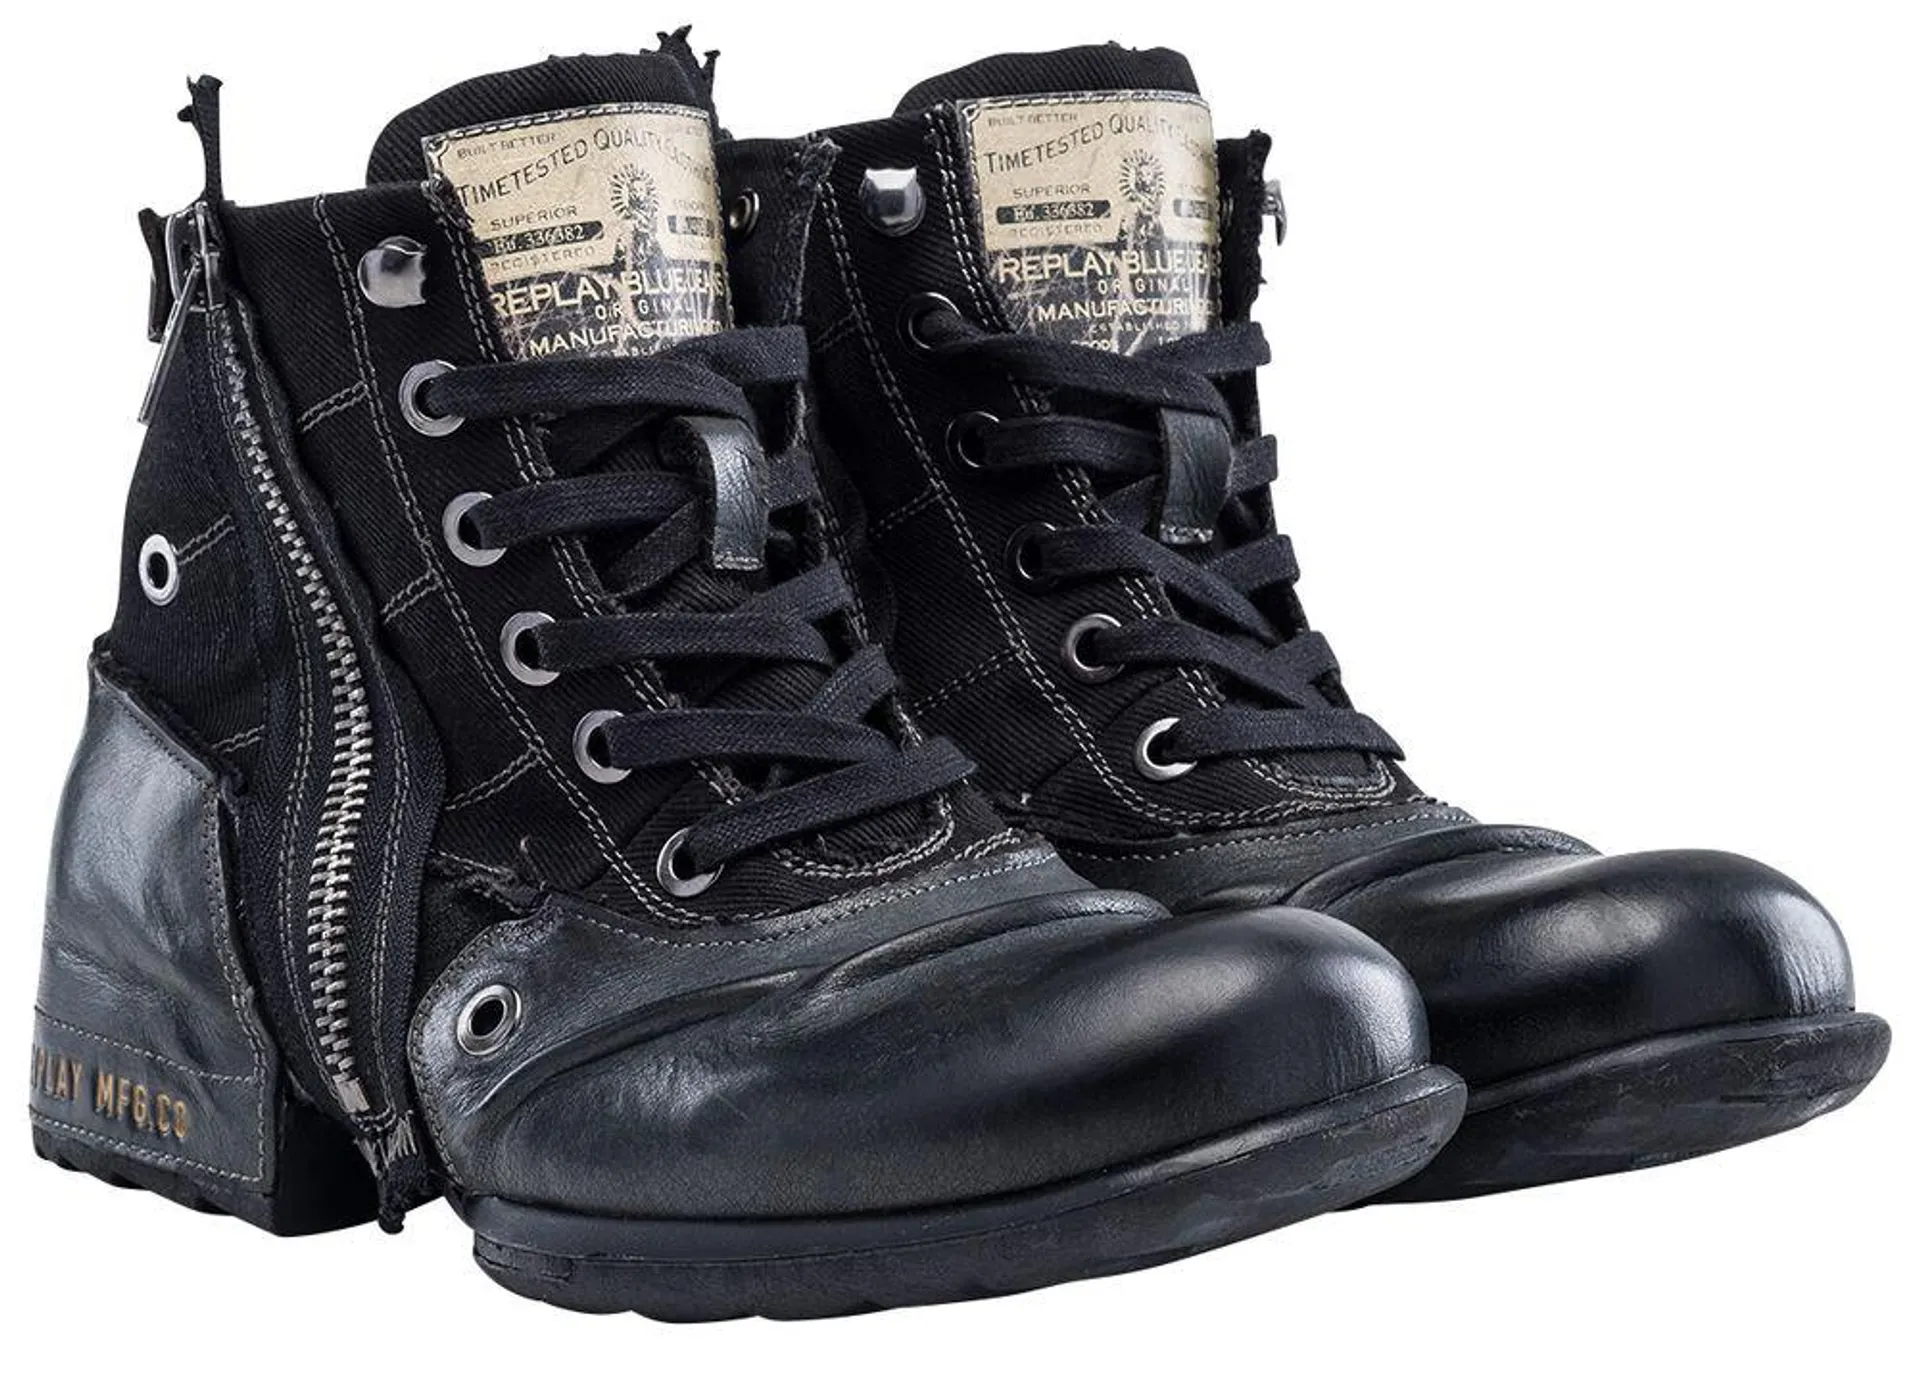 "Clutch" Botas Negro de Replay Footwear